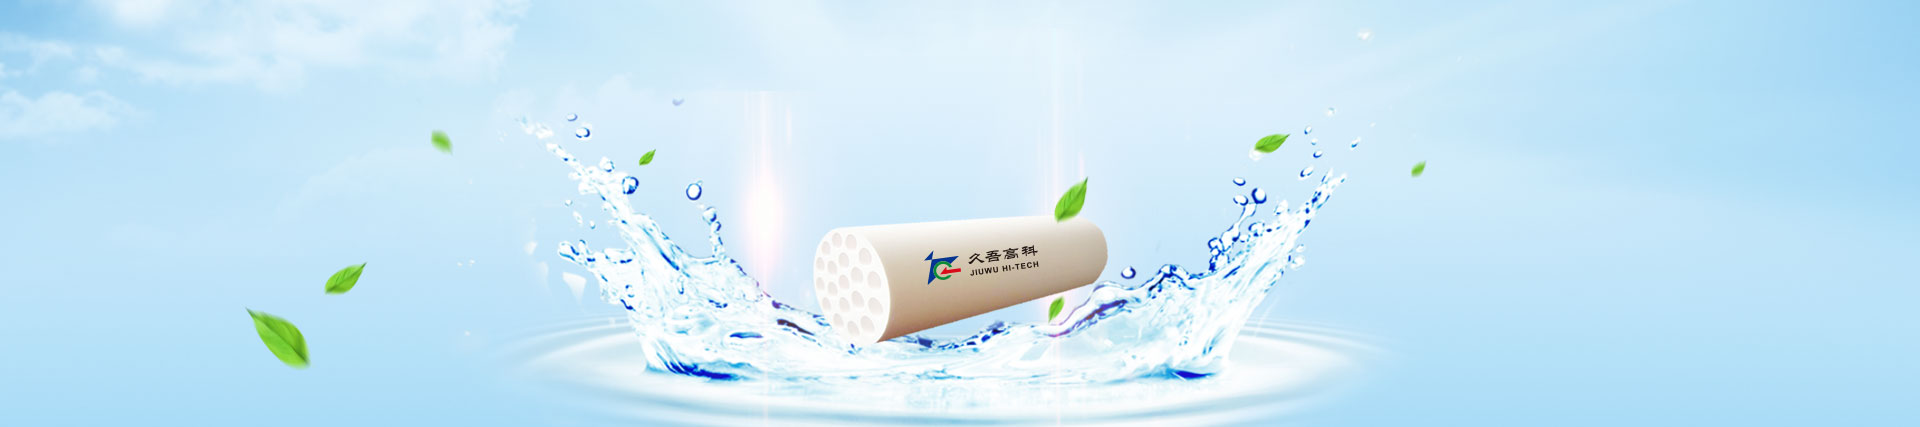 JIUWU HI-TECH: La marca líder de membrana de cerámica china